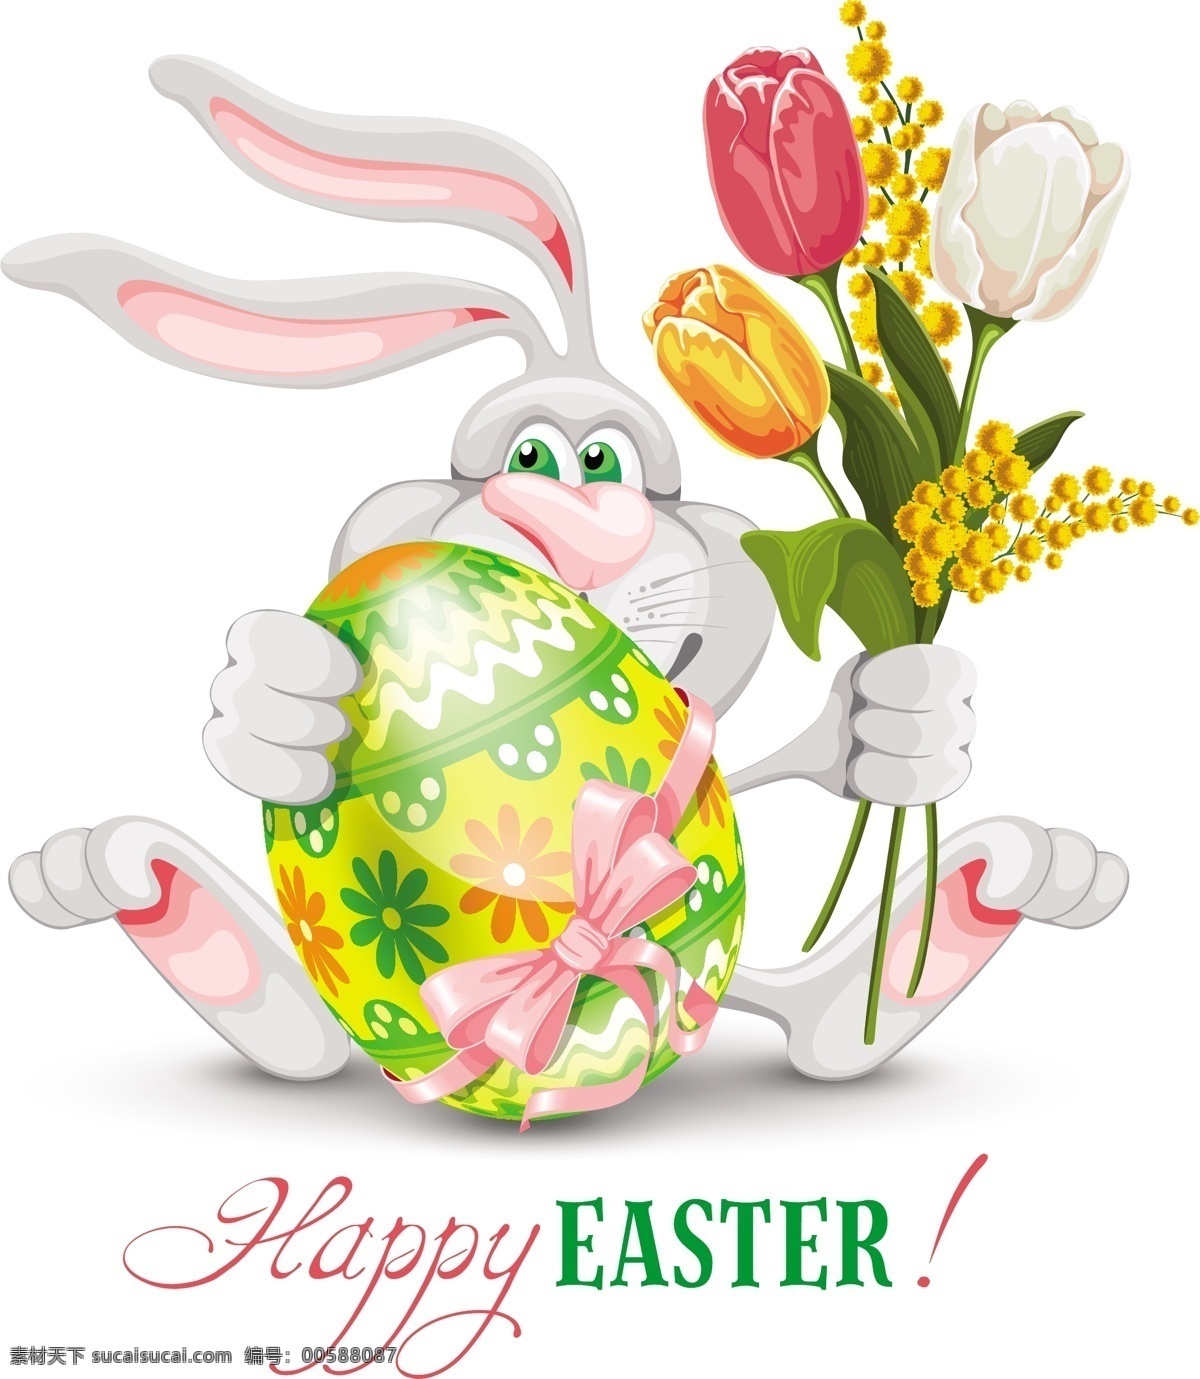 复活节 鸡蛋 矢量 兔子 卡通兔子 花卉 蝴蝶结 节日素材 节日庆祝 文化艺术